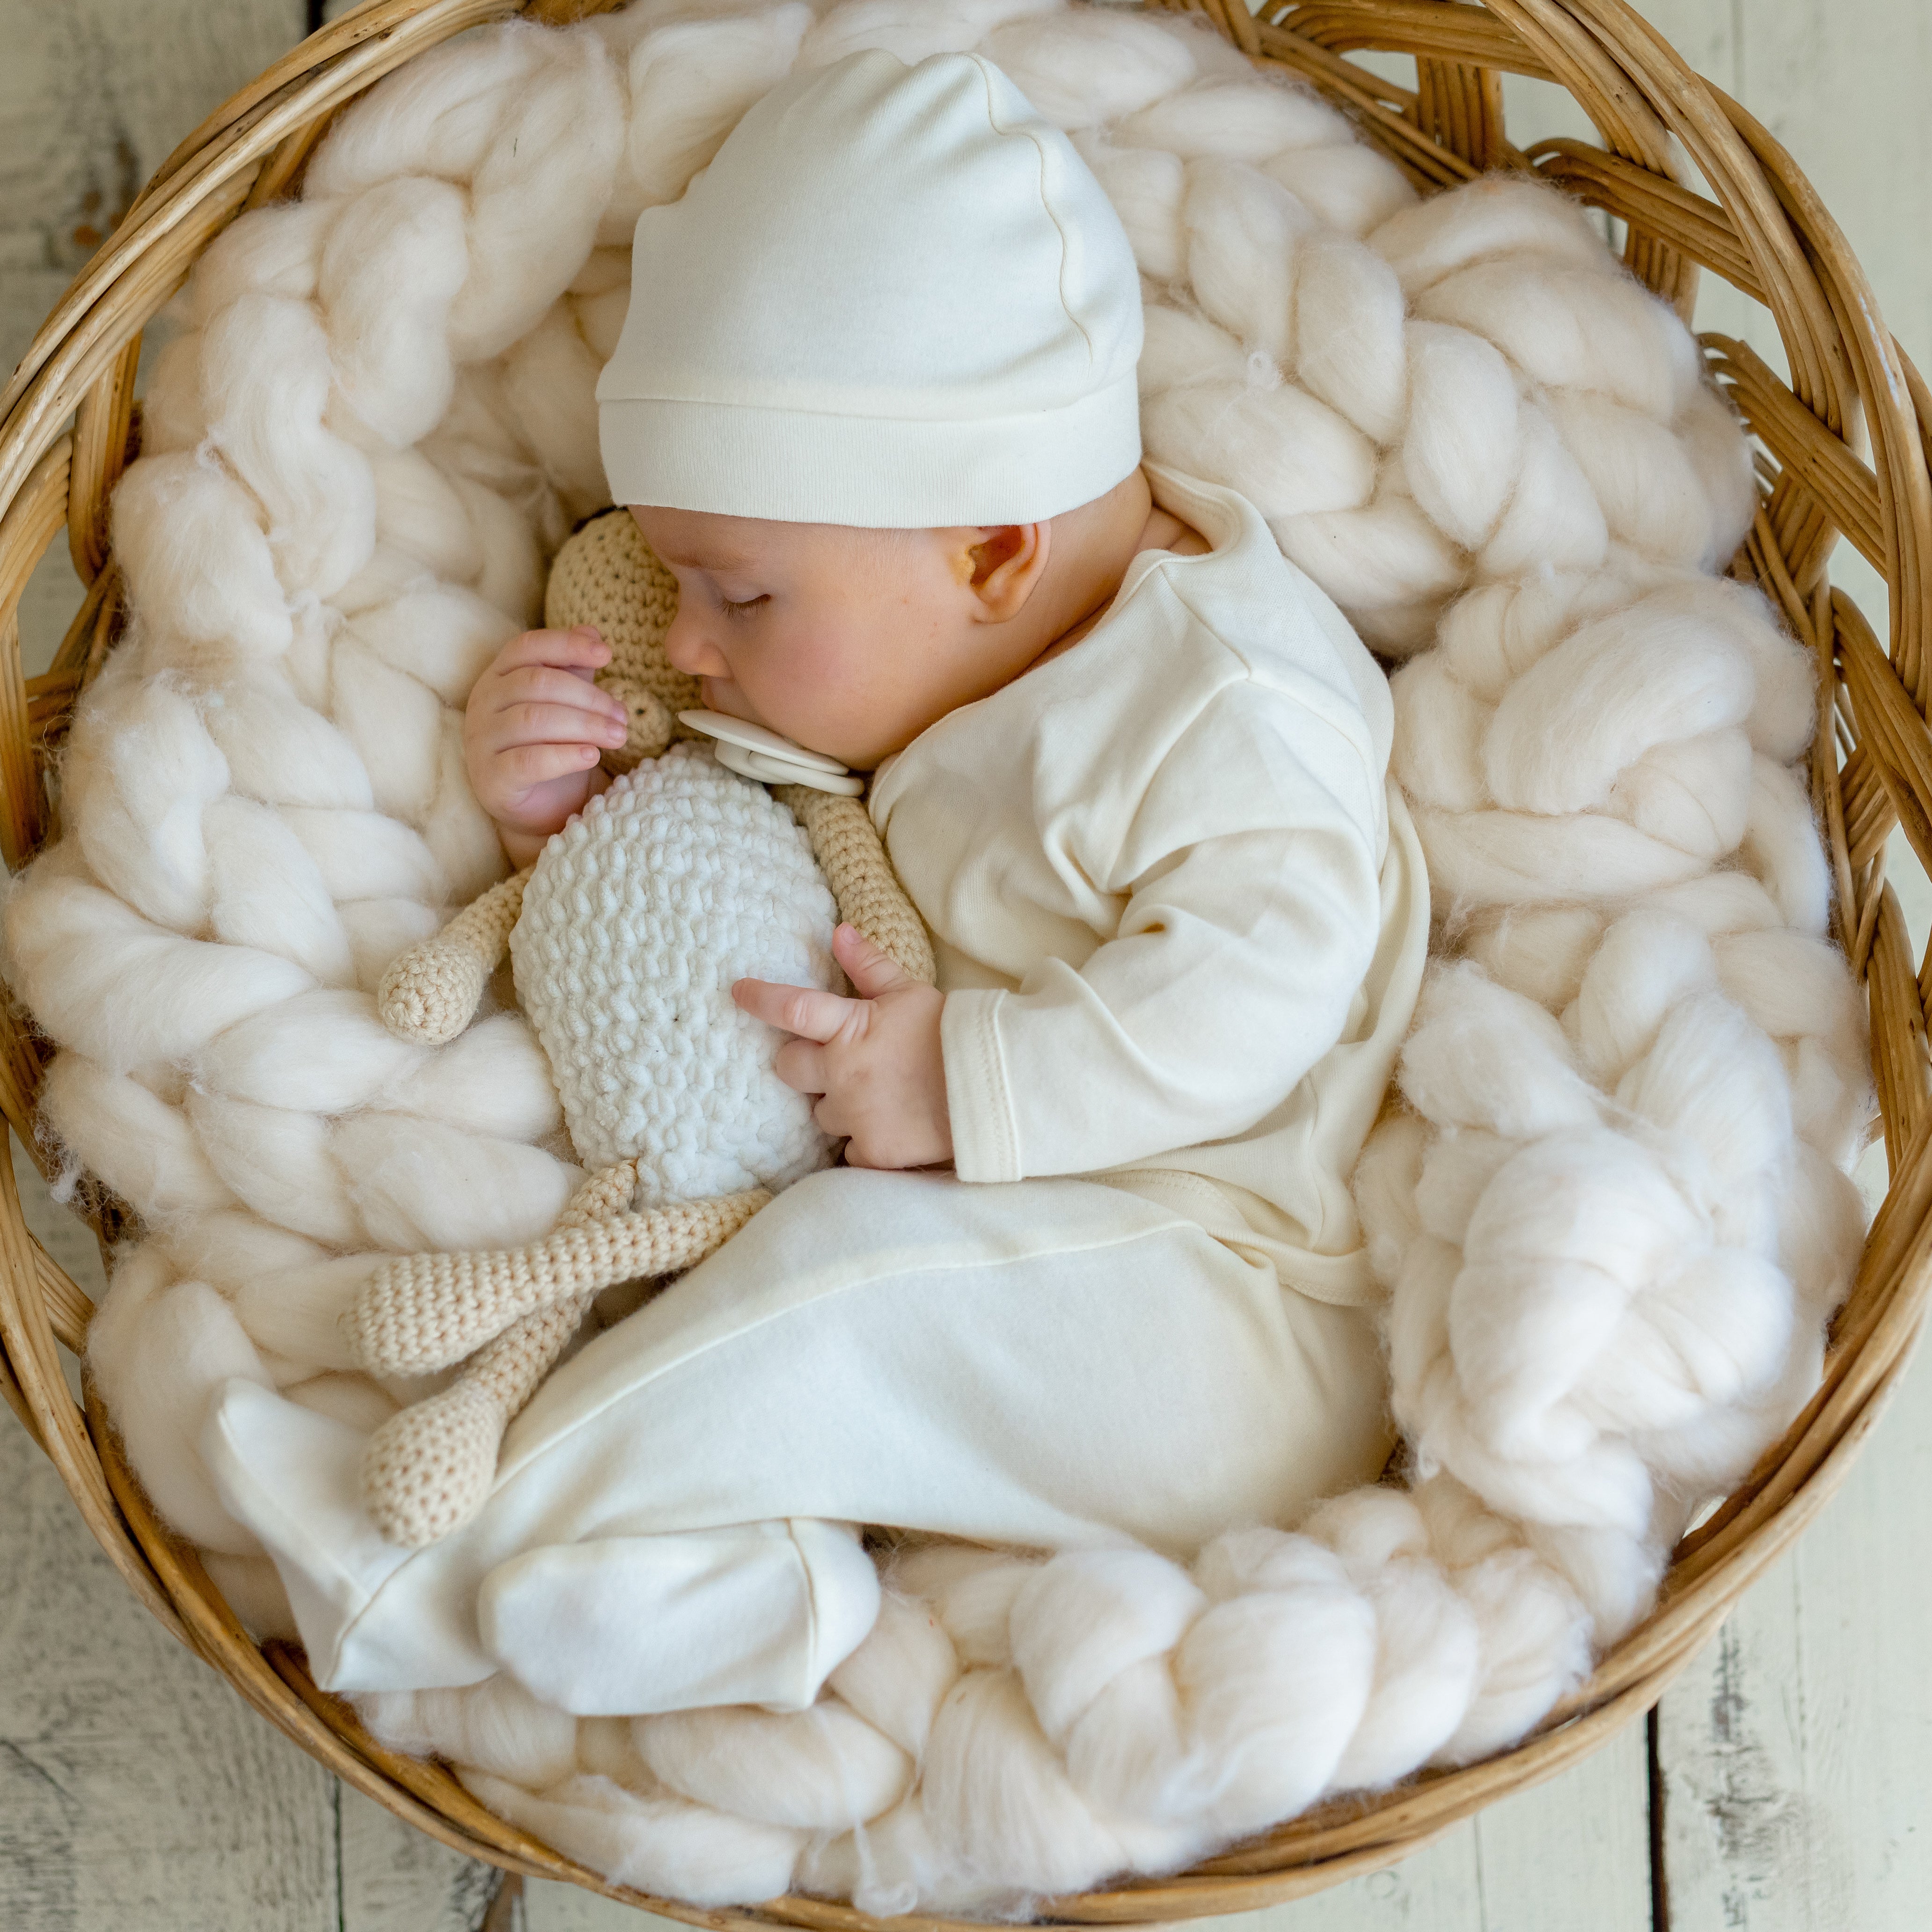 Kocho Neugeborenen Erstausstattung 100% Elsara – Set Bio-Baumwolle